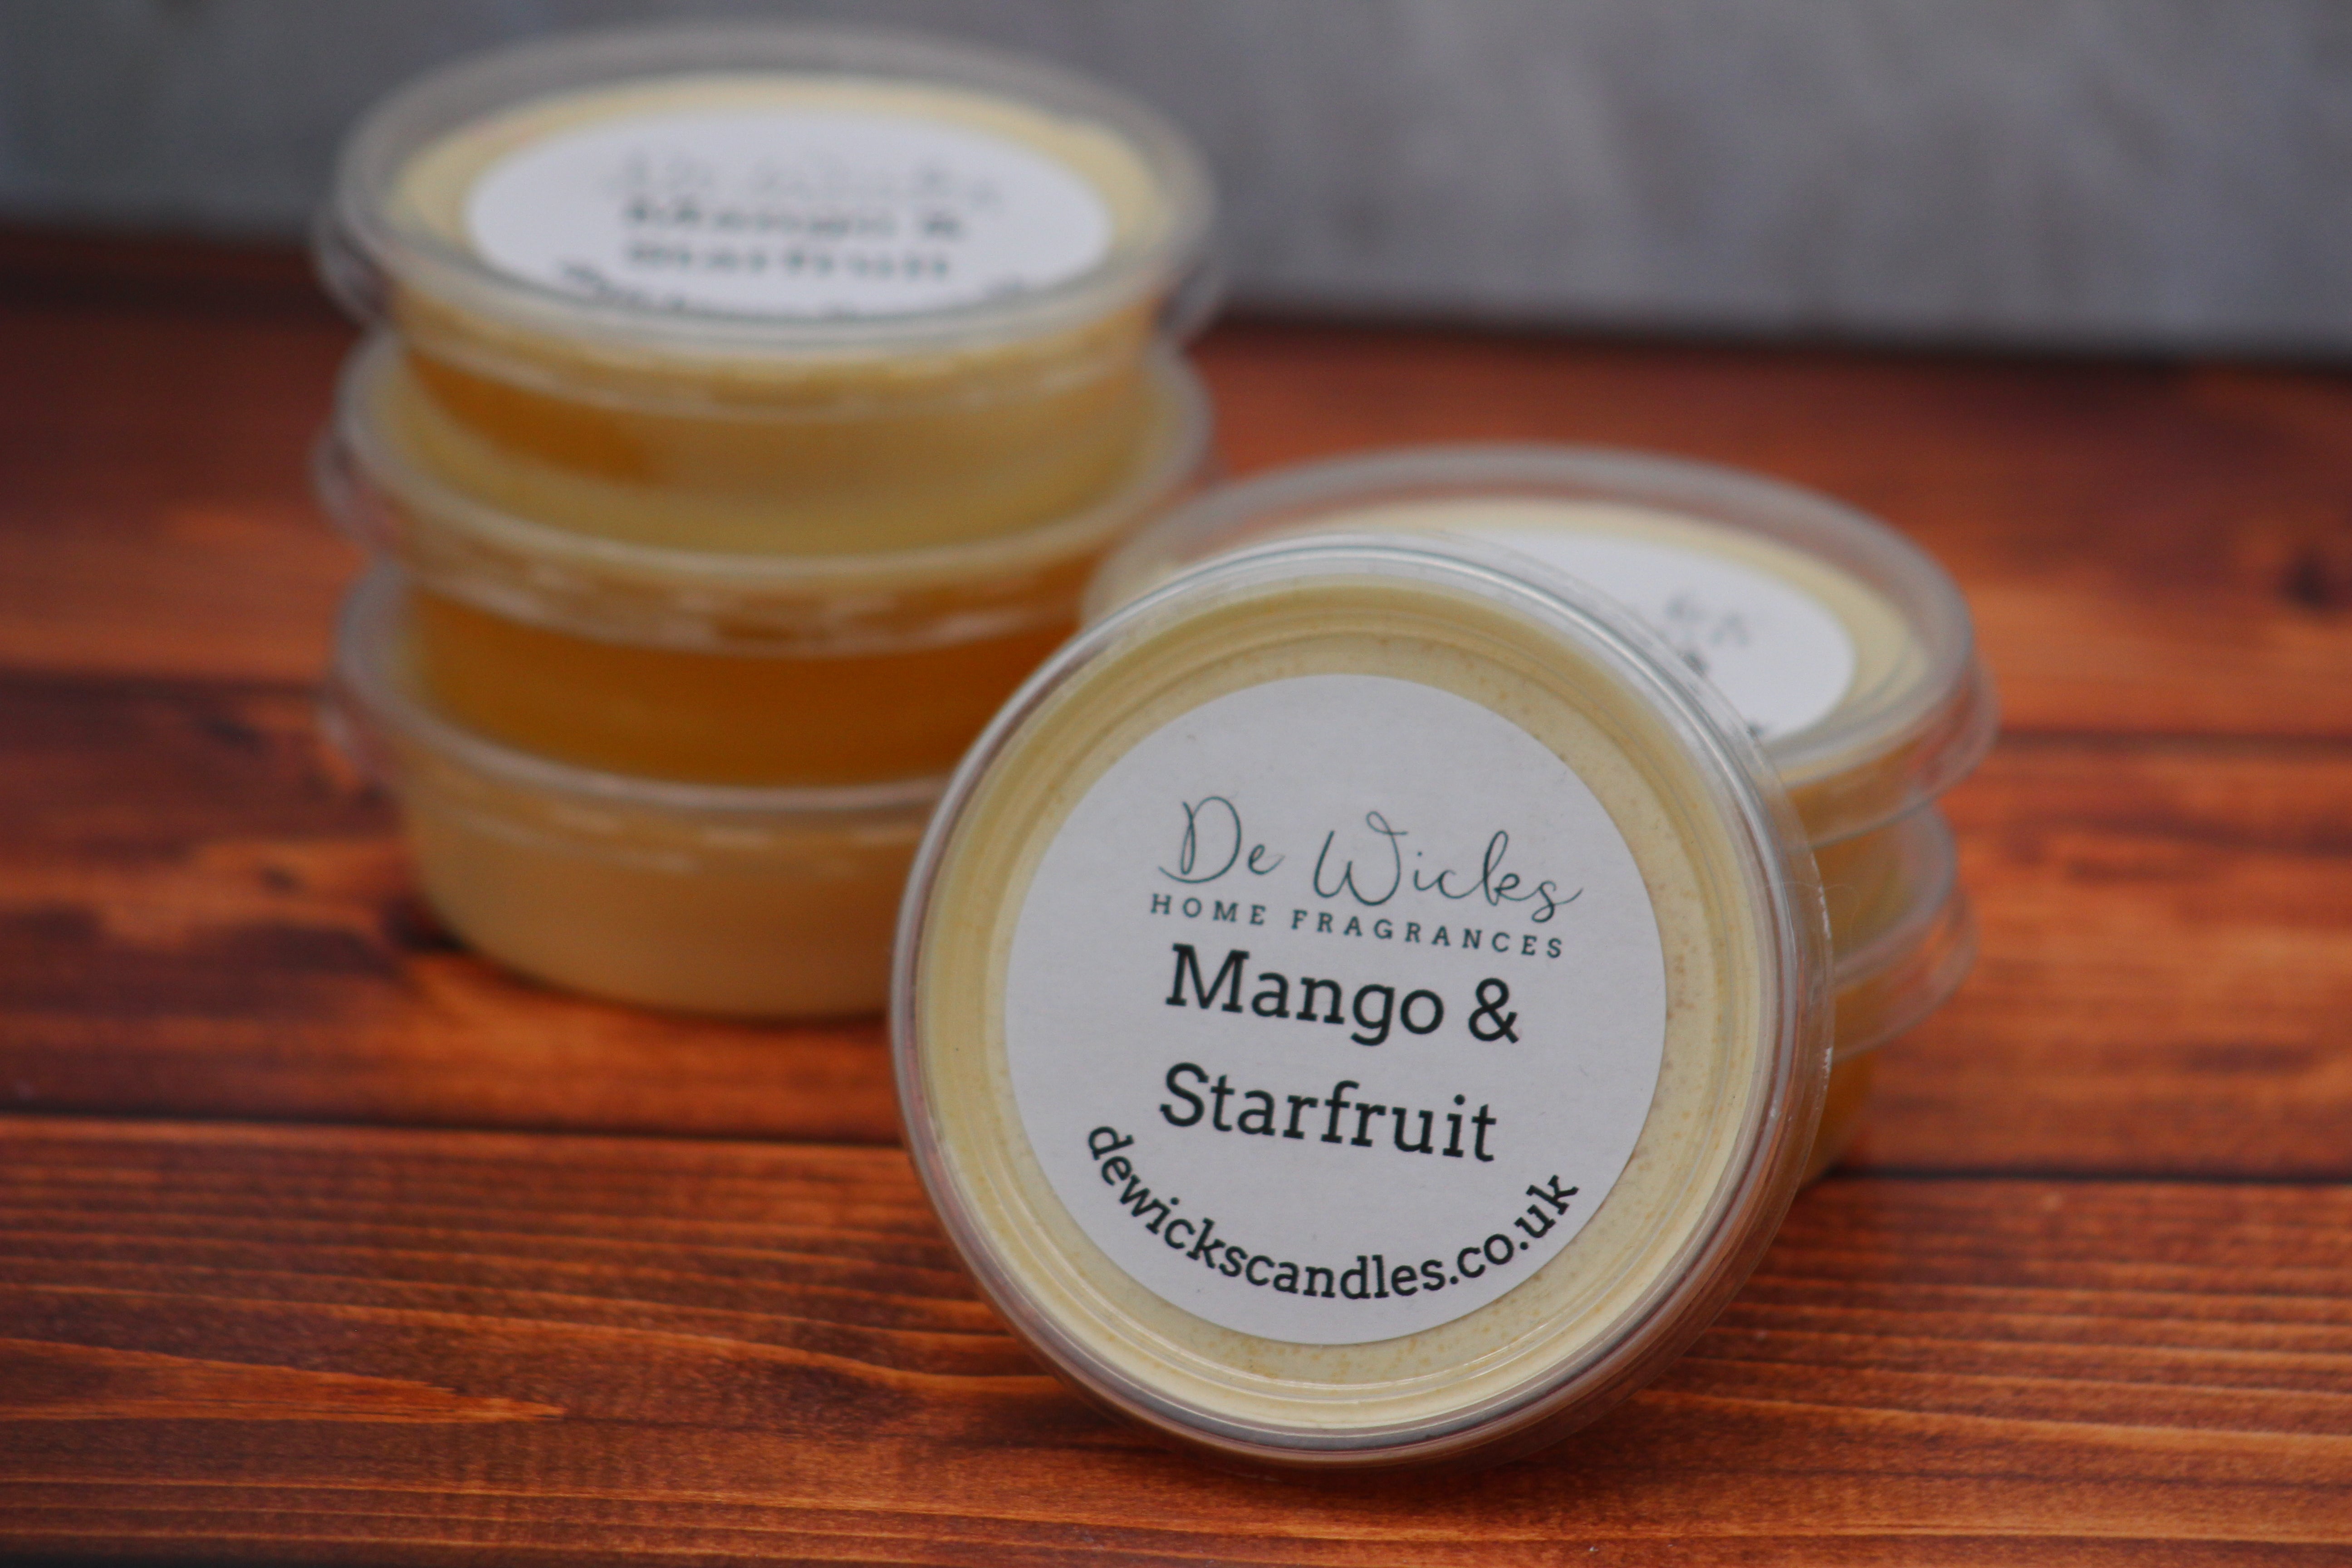 Mango & Starfruit - De Wicks Home Fragrances